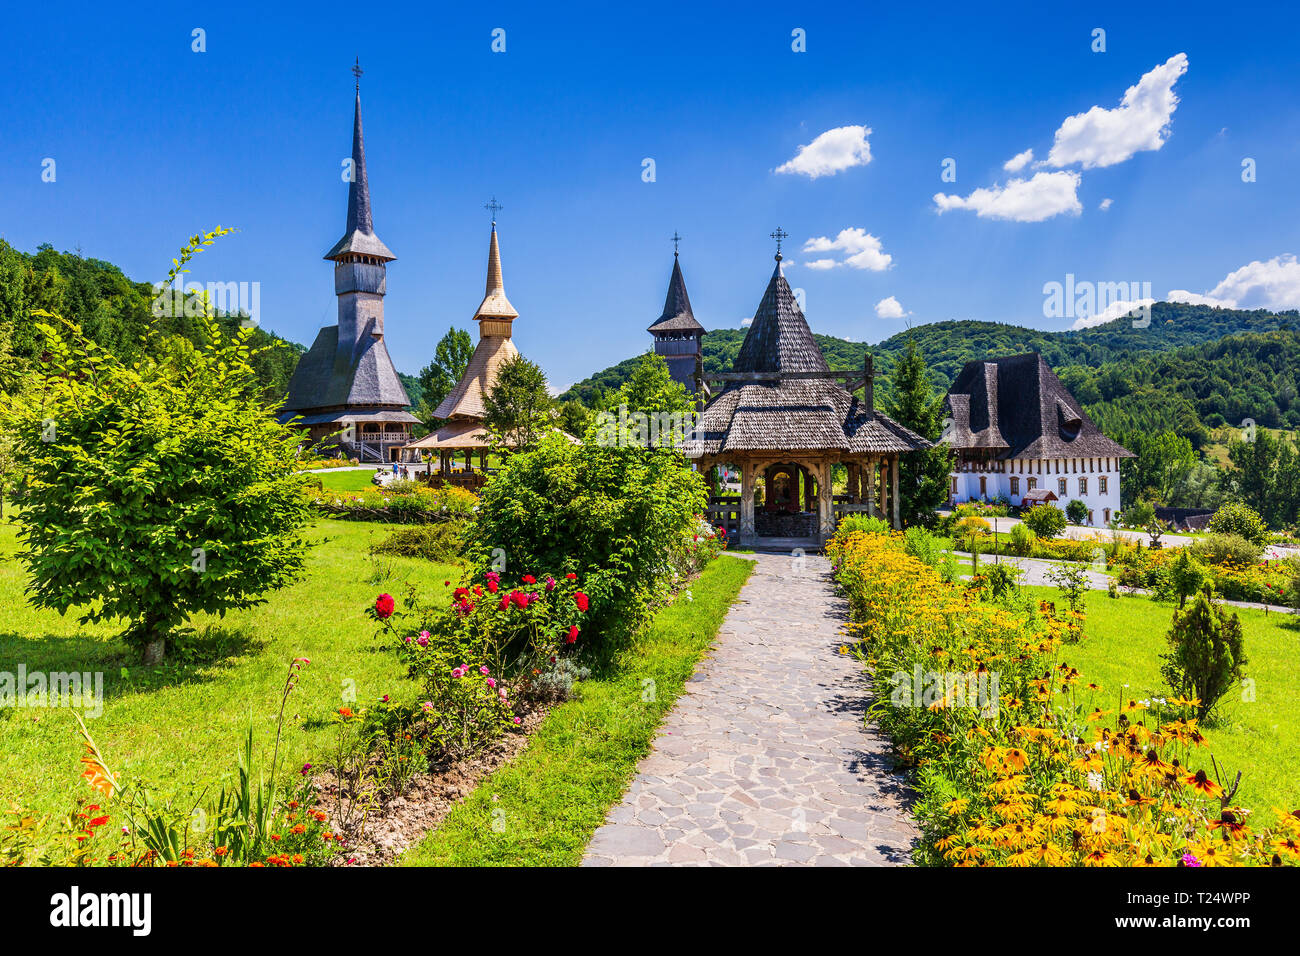 Barsana, Romania. Wooden churches at Barsana Monastery. Maramures region. Stock Photo